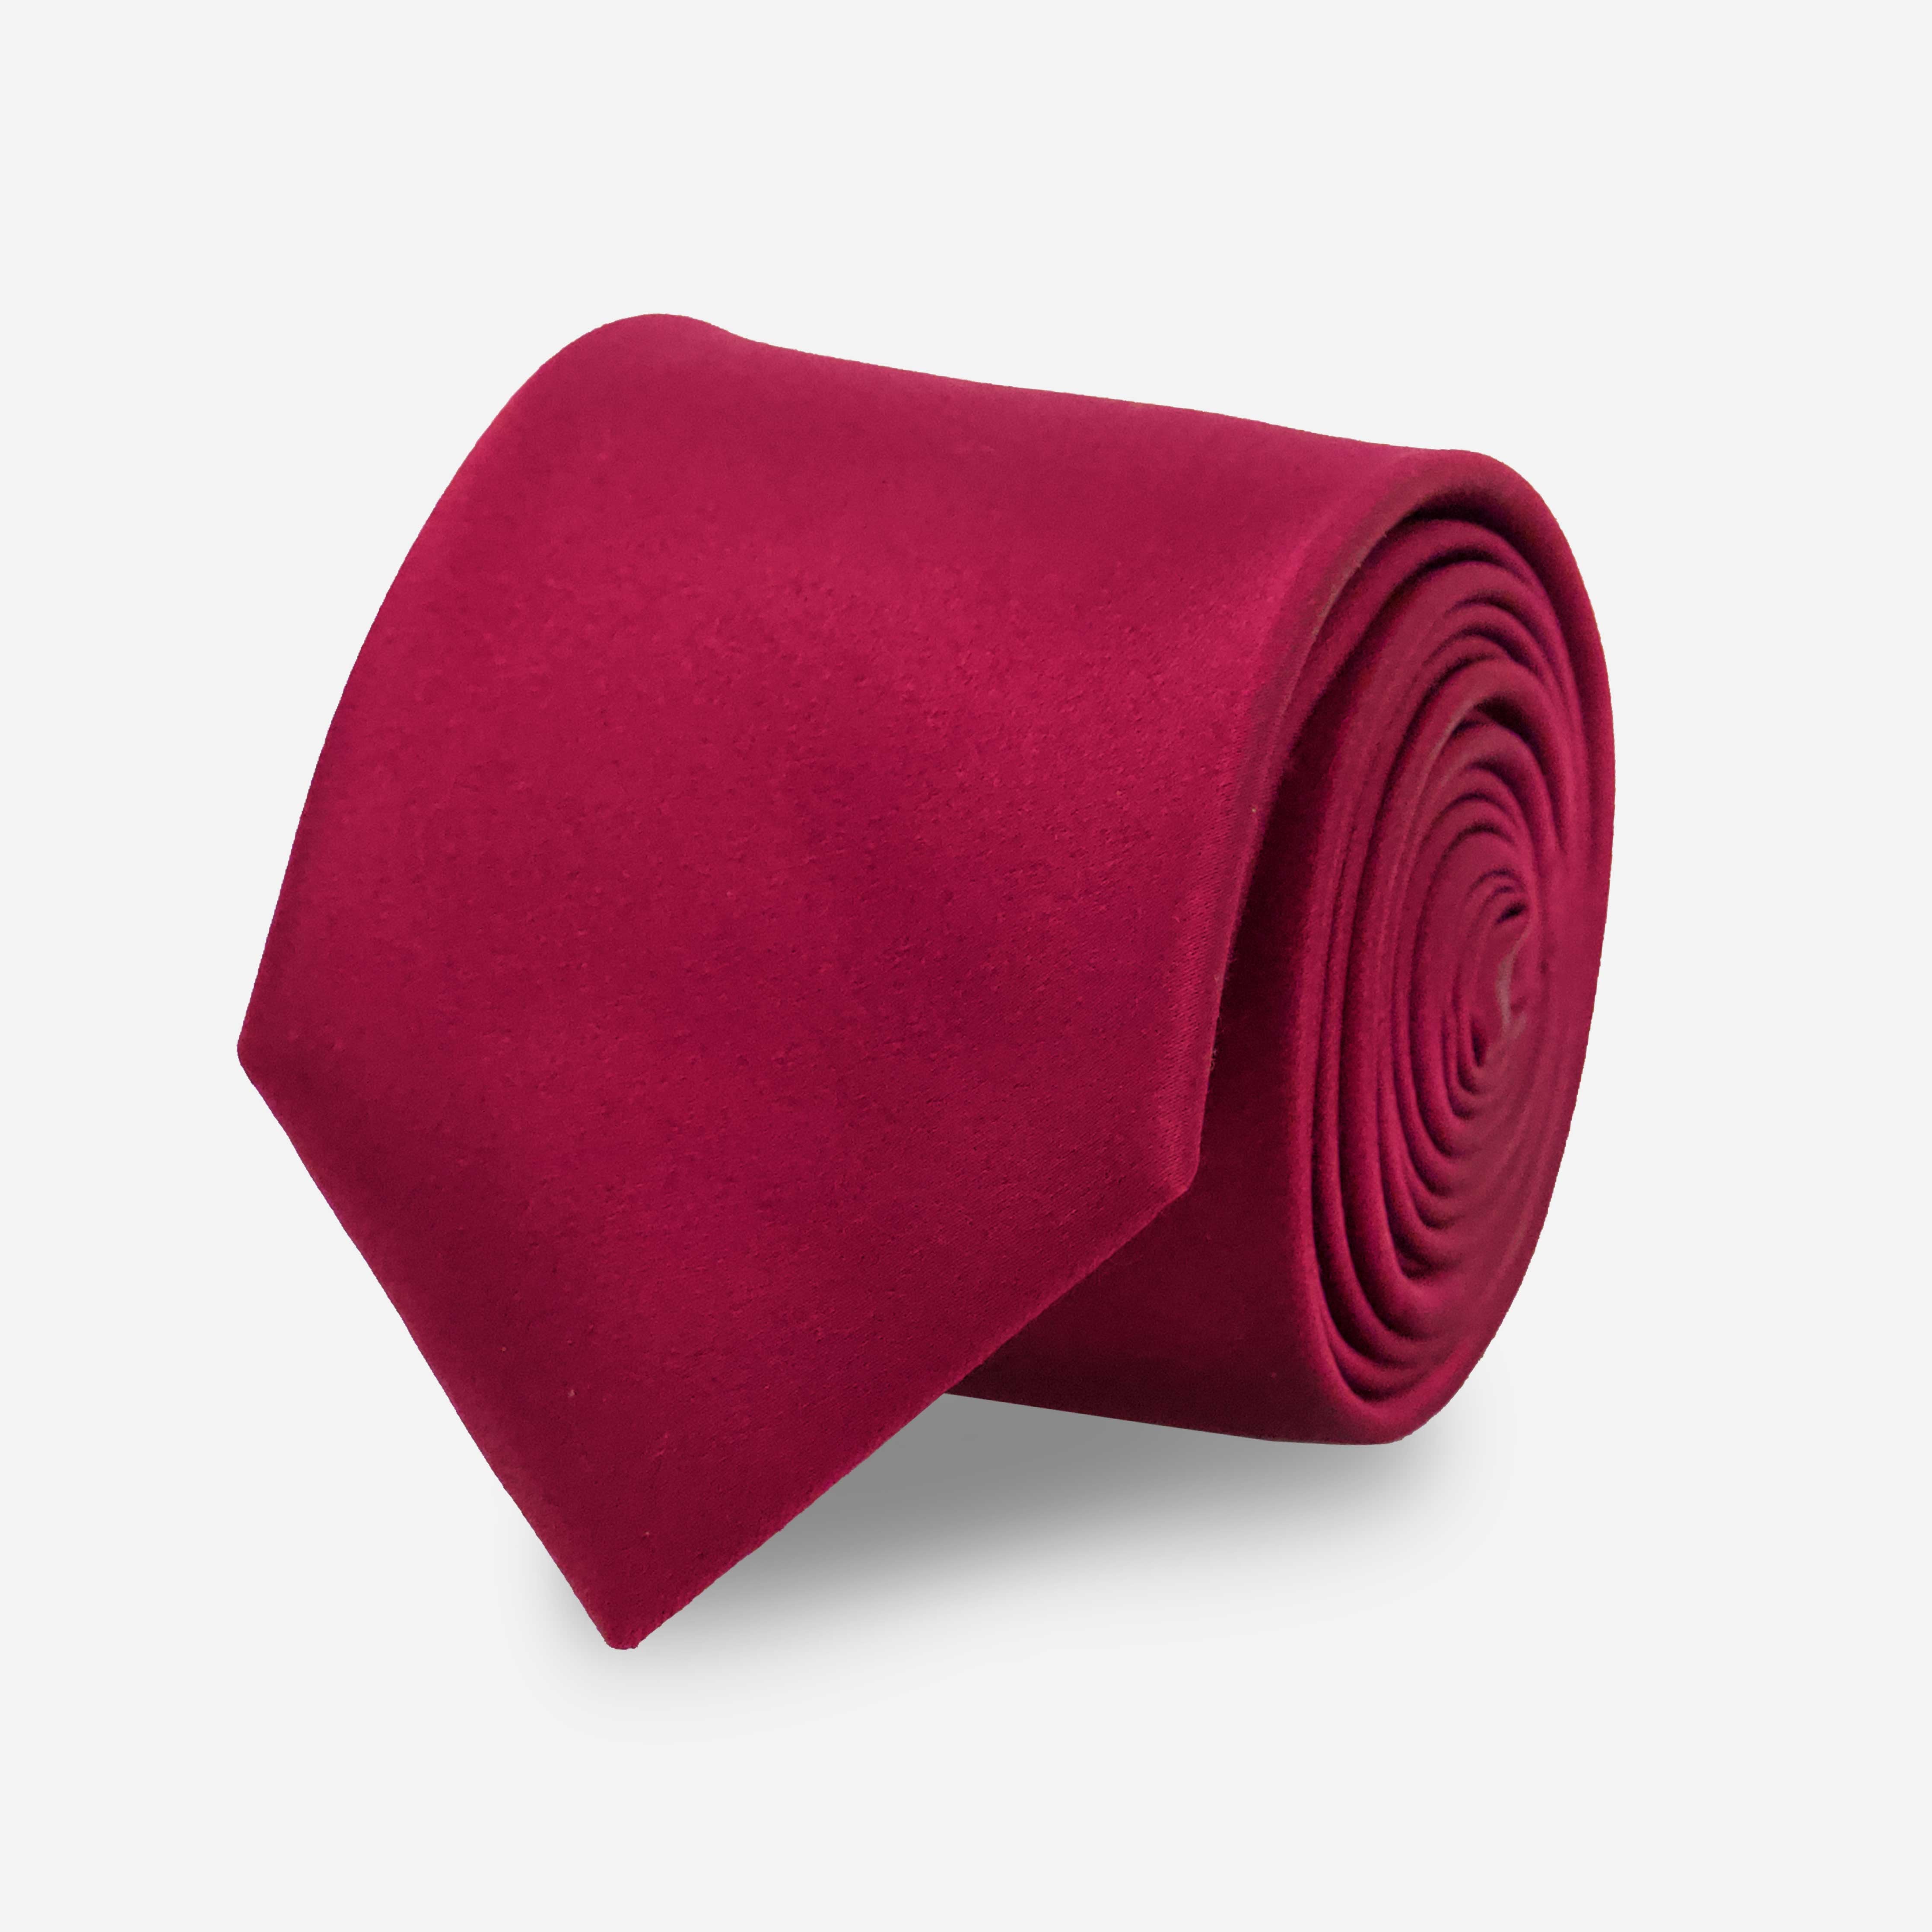 Dark Red Tie